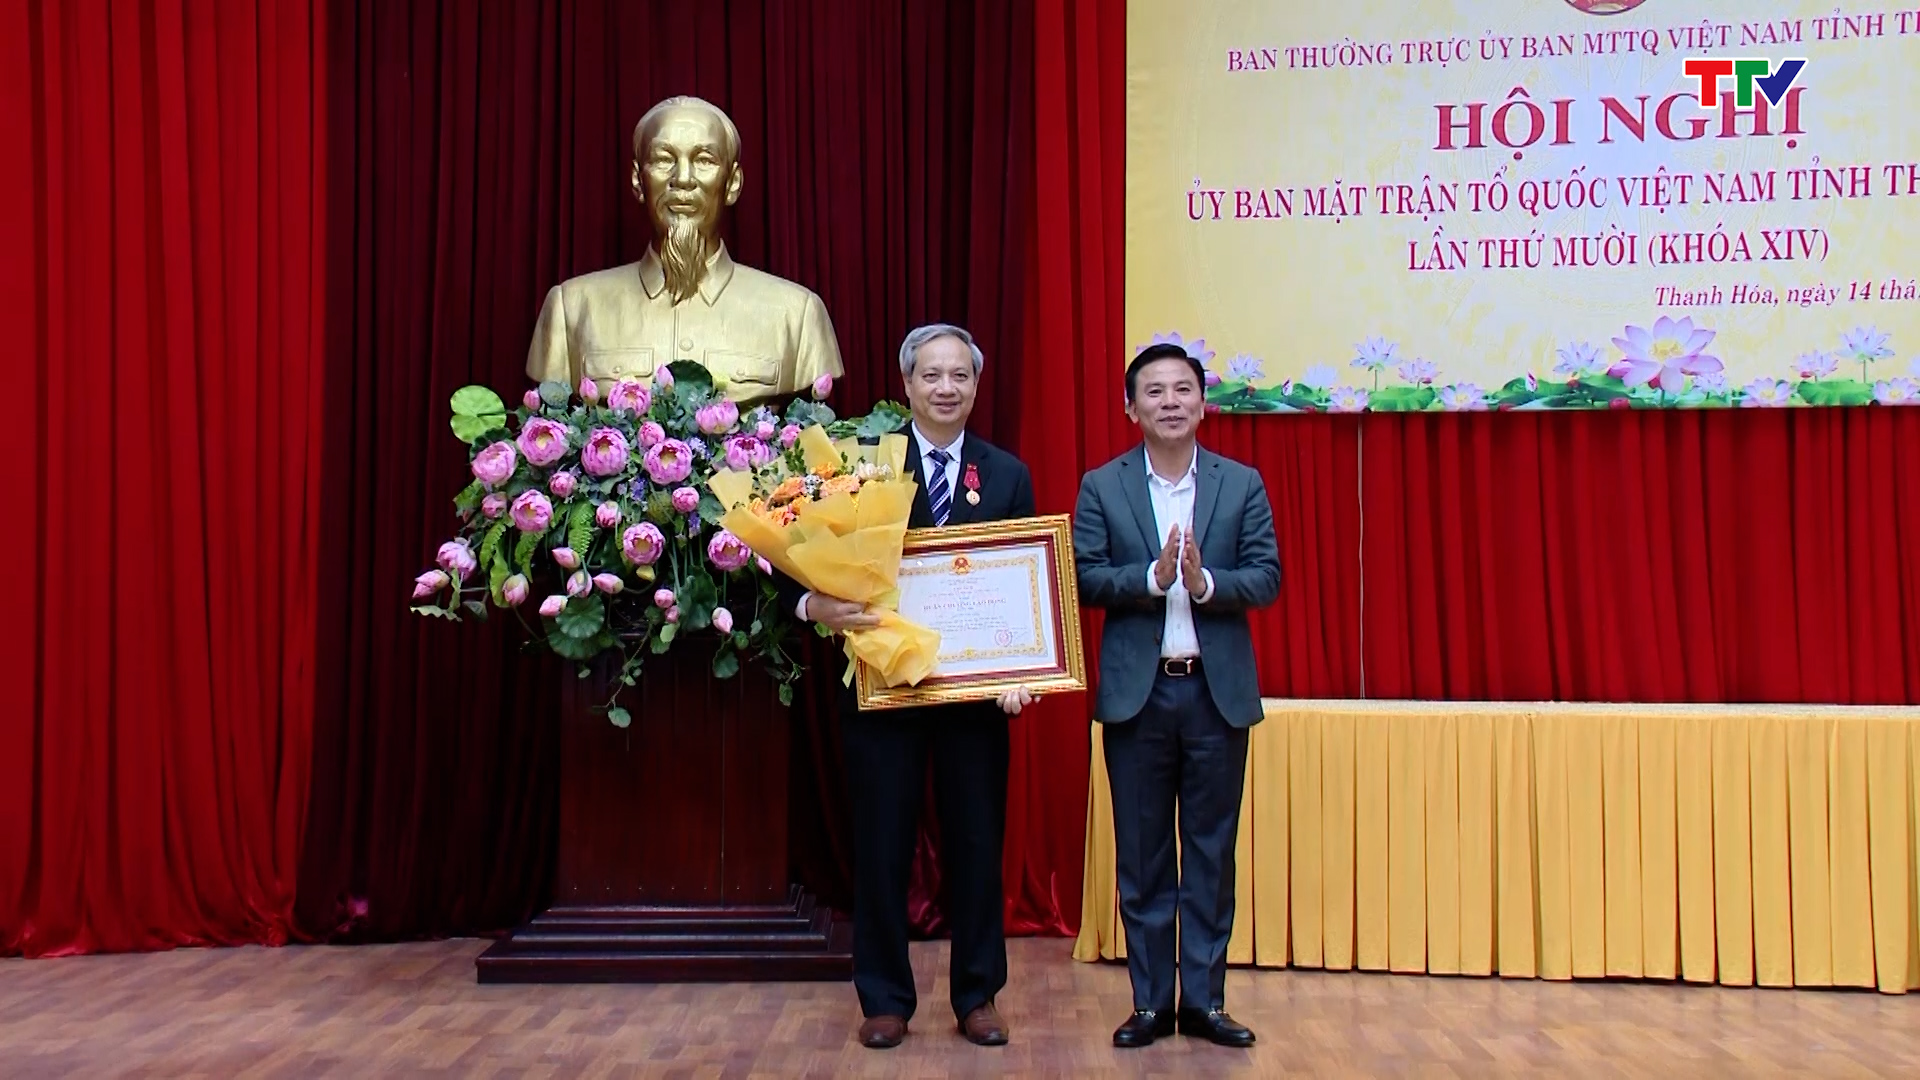 Hội nghị lần thứ 10 UB MTTQ Việt Nam tỉnh Thanh Hóa - Ảnh 5.